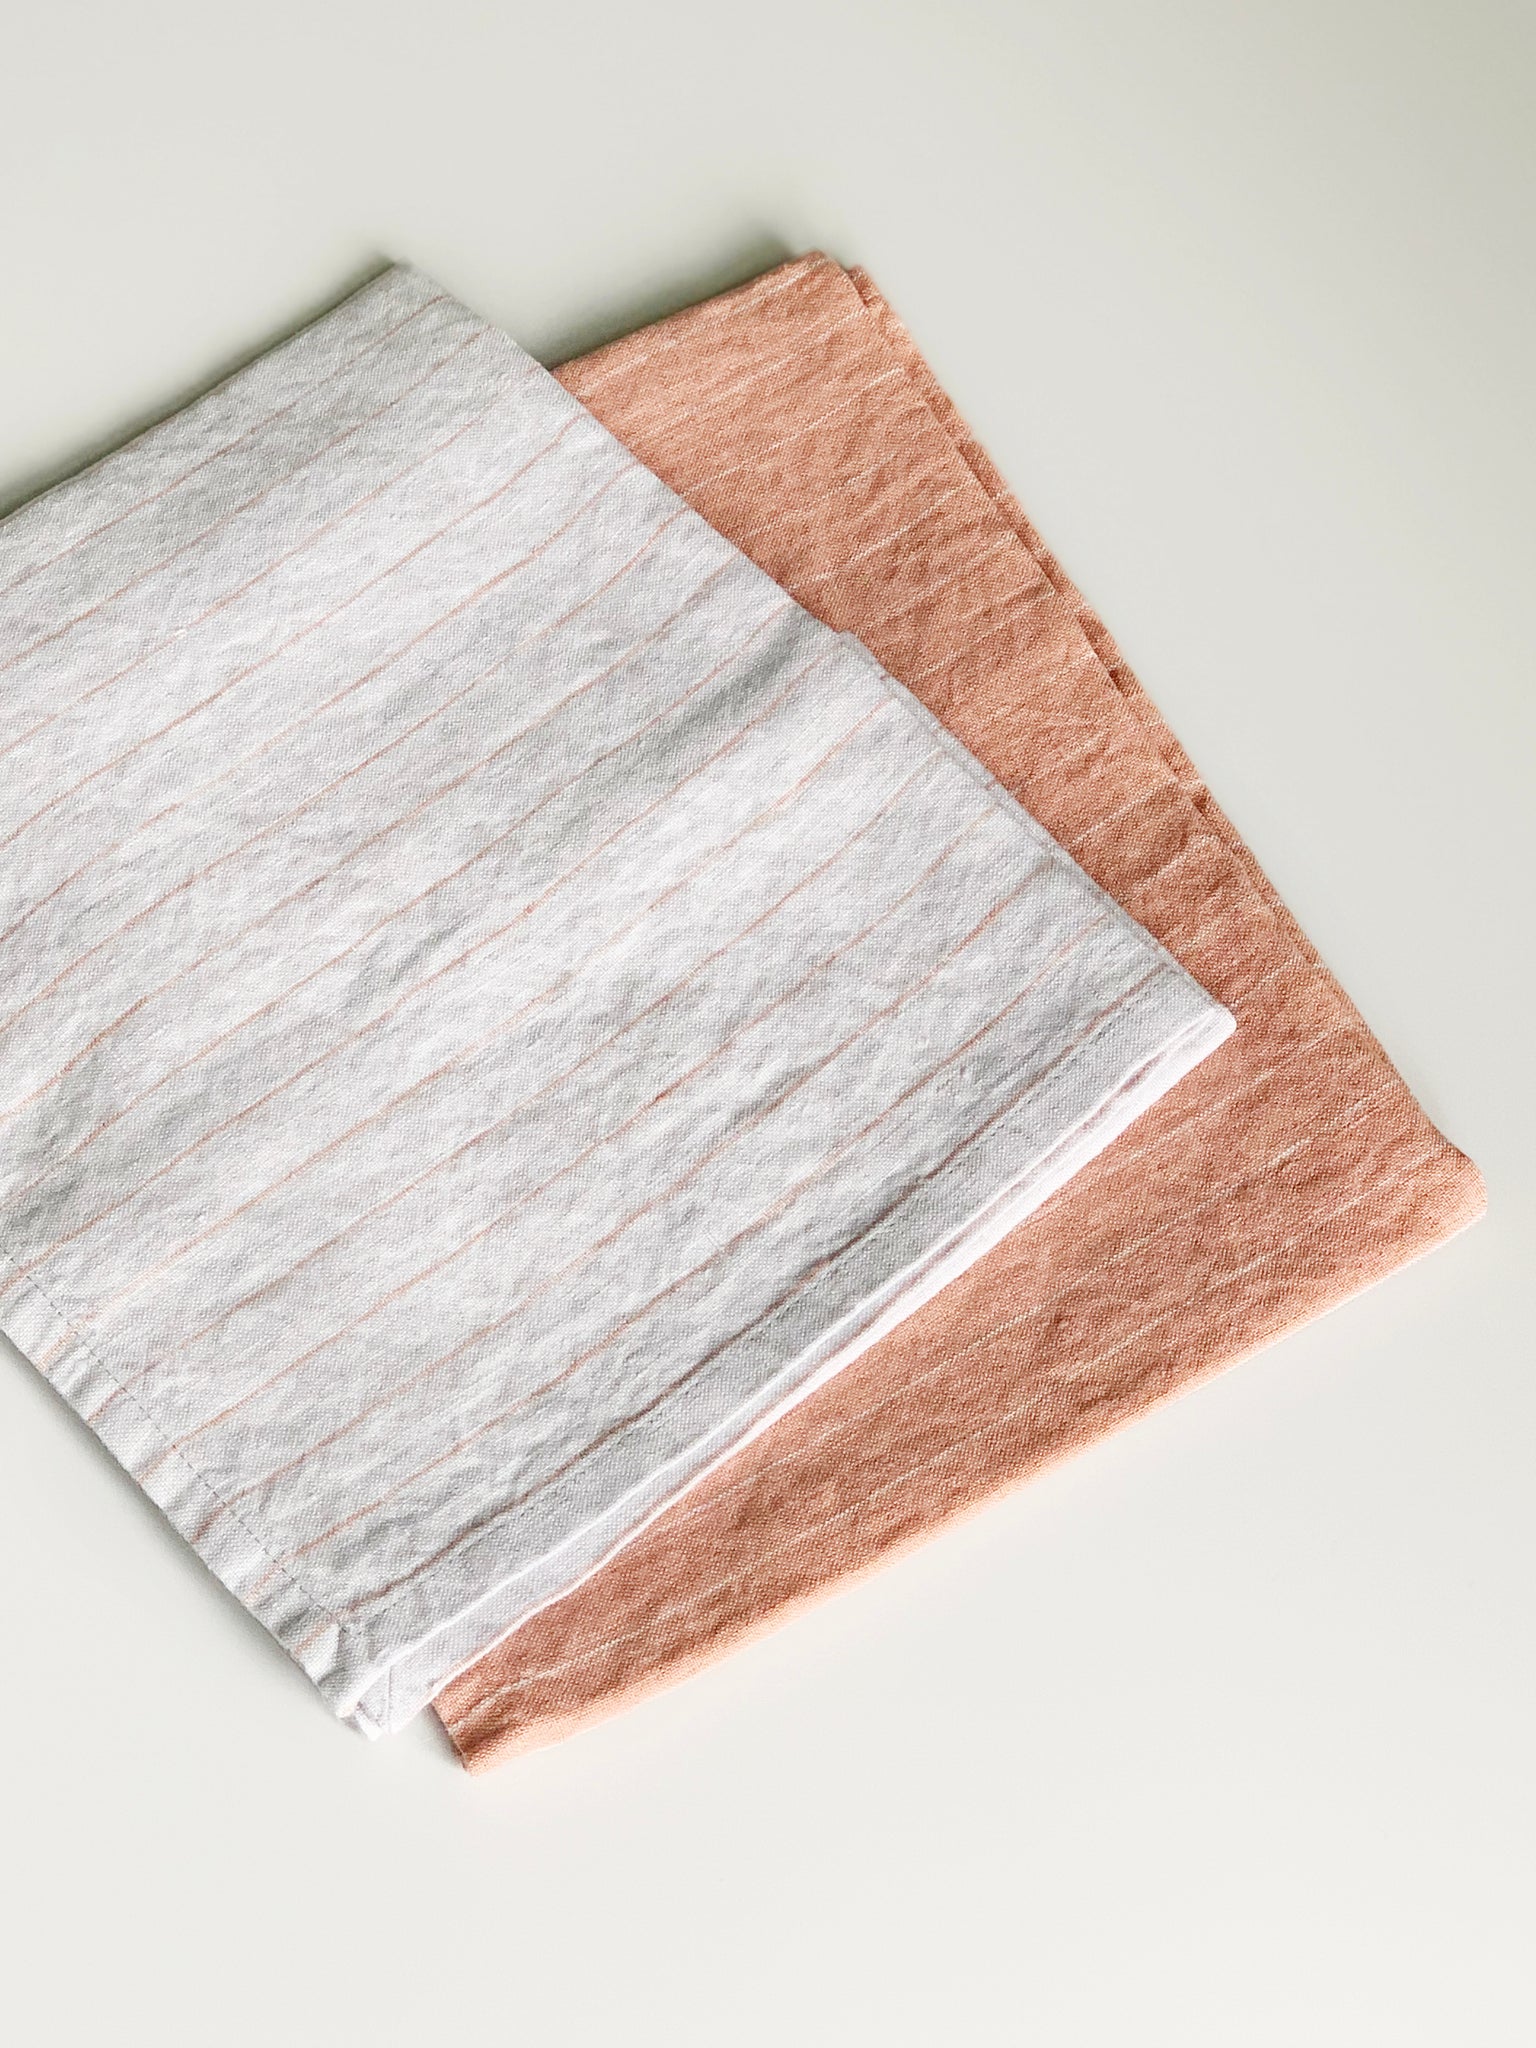 Stilleben Kitchen Towel - Set of 2 Kitchen Towel Terracotta/Grey